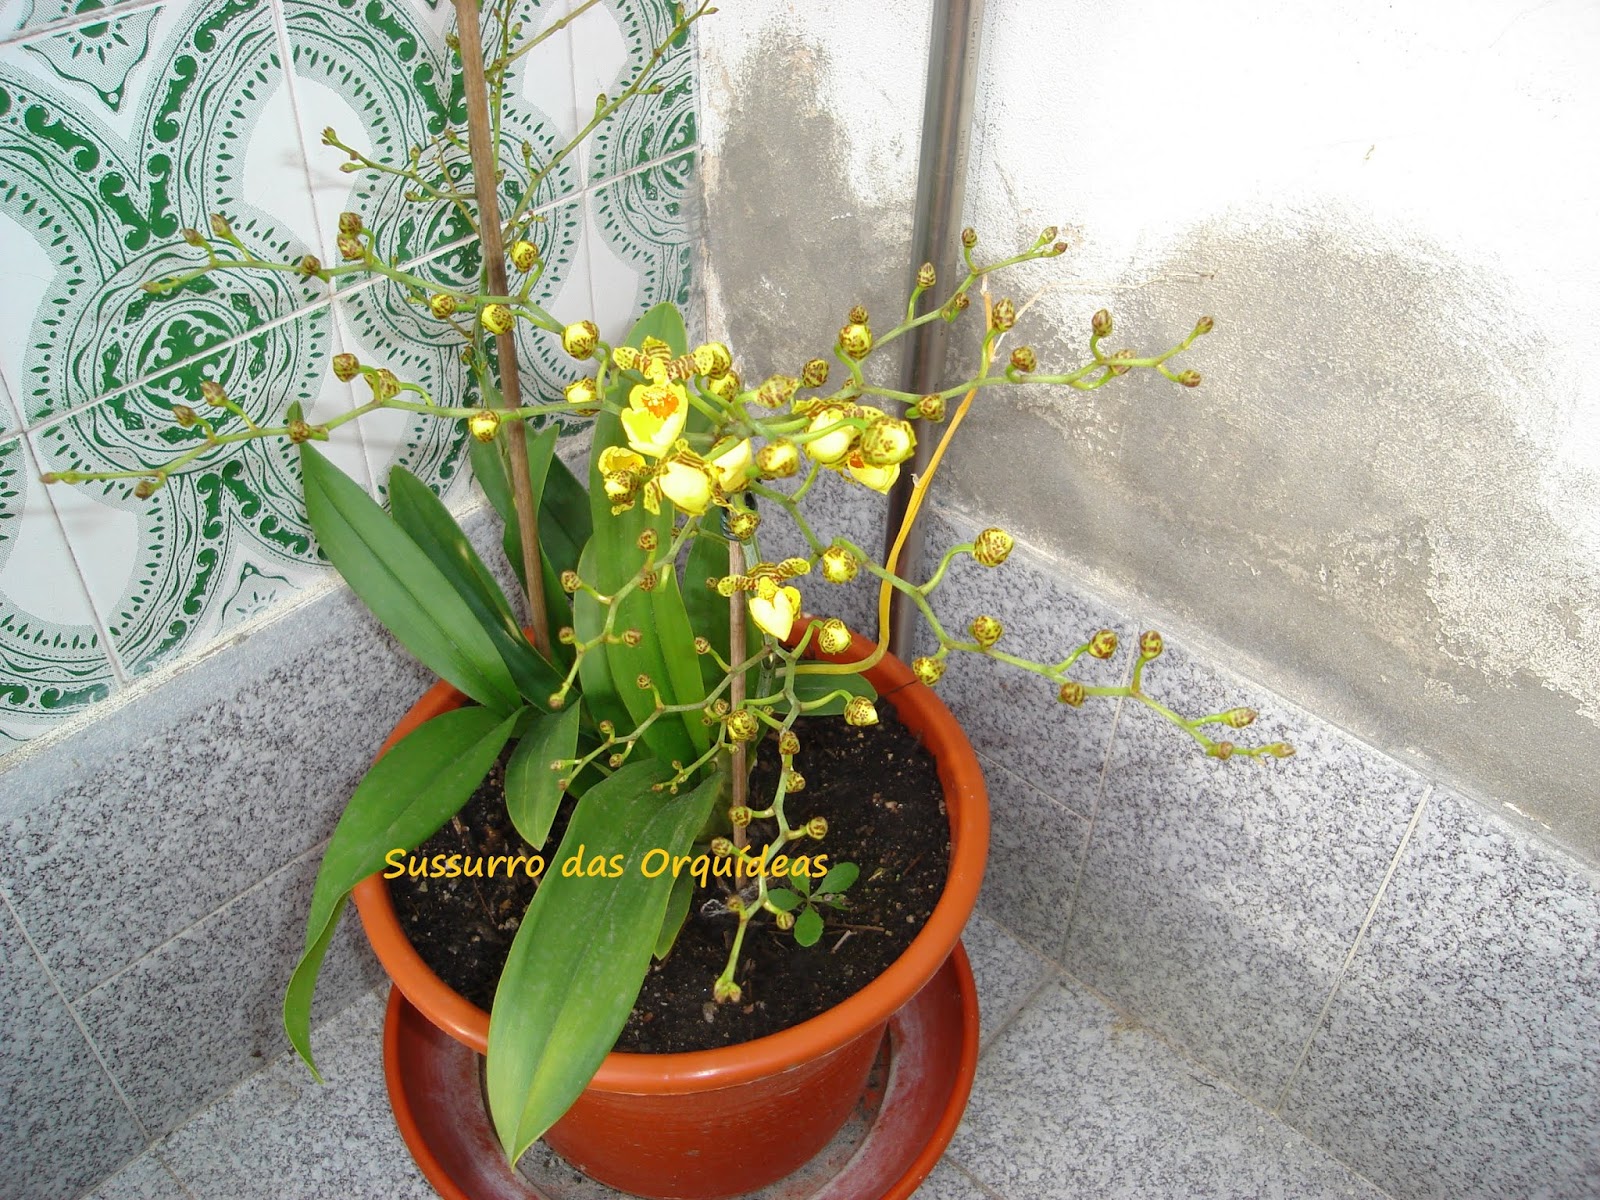 Sussurro das Orquídeas: Fotos do Baú: Oncidium Sweet Sugar - o Primeiro